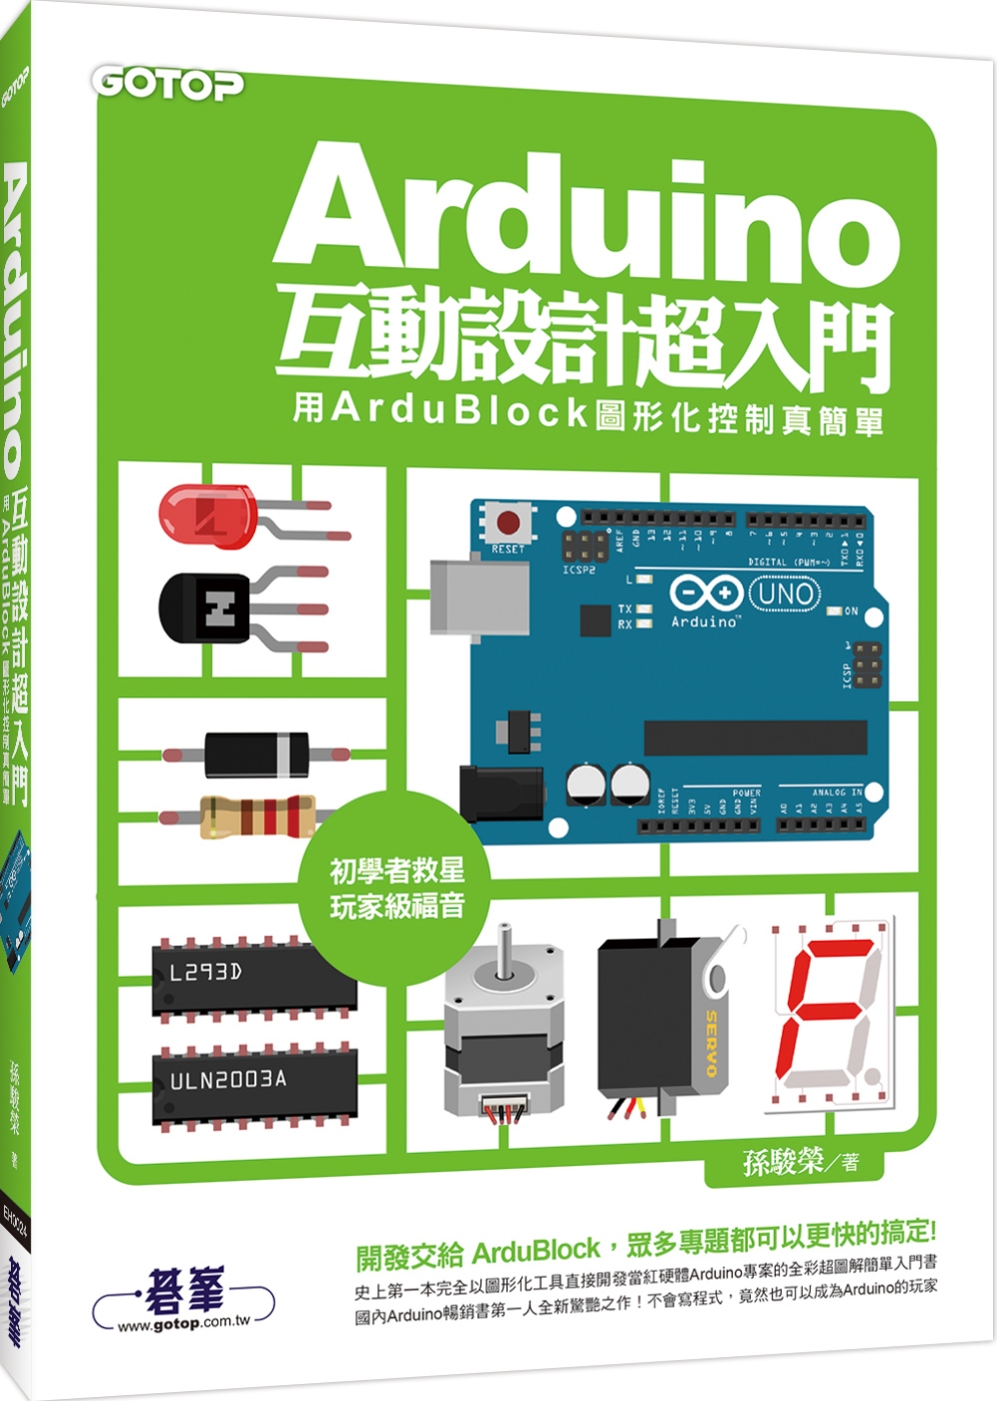 Arduino互動設計超入門：用ArduBlock圖形化控制真簡單(附原廠授權之ArduBlock軟體、相關工具與全書專案範例)